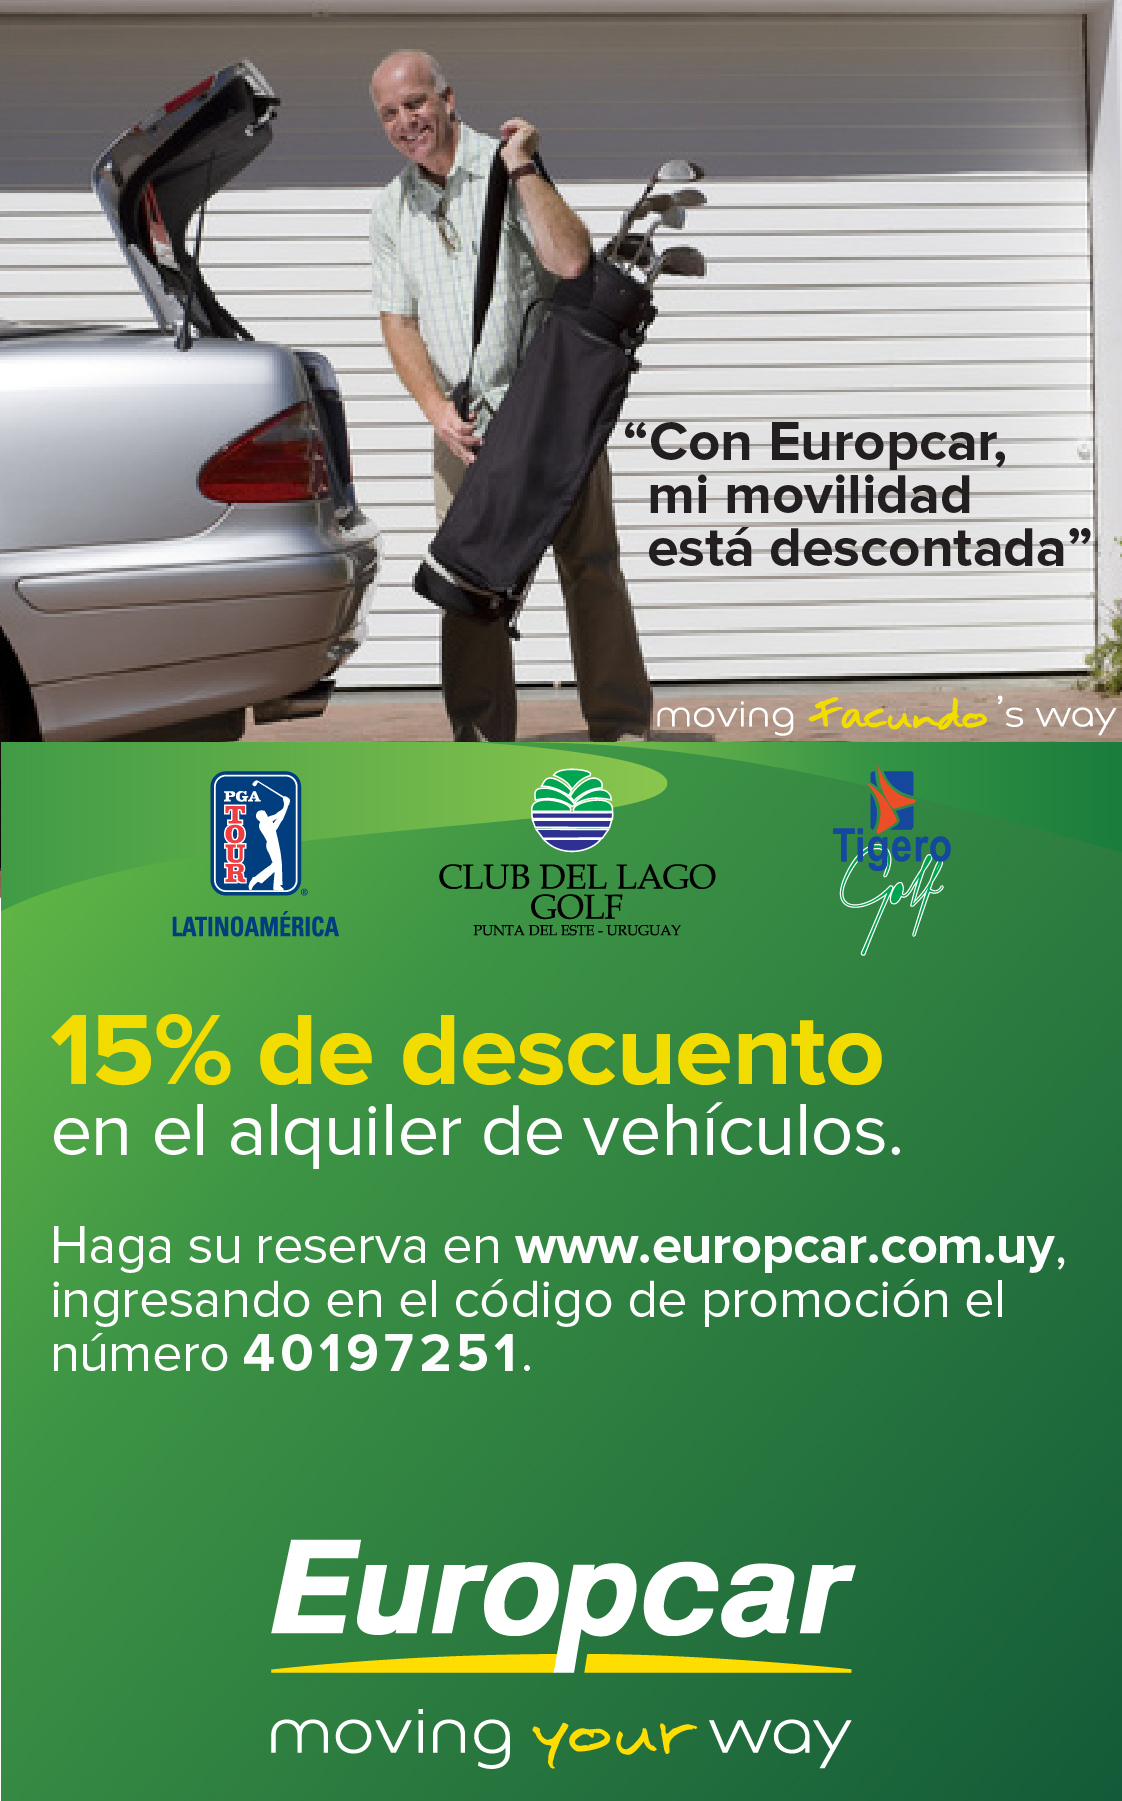 Club del lago Golf europcar